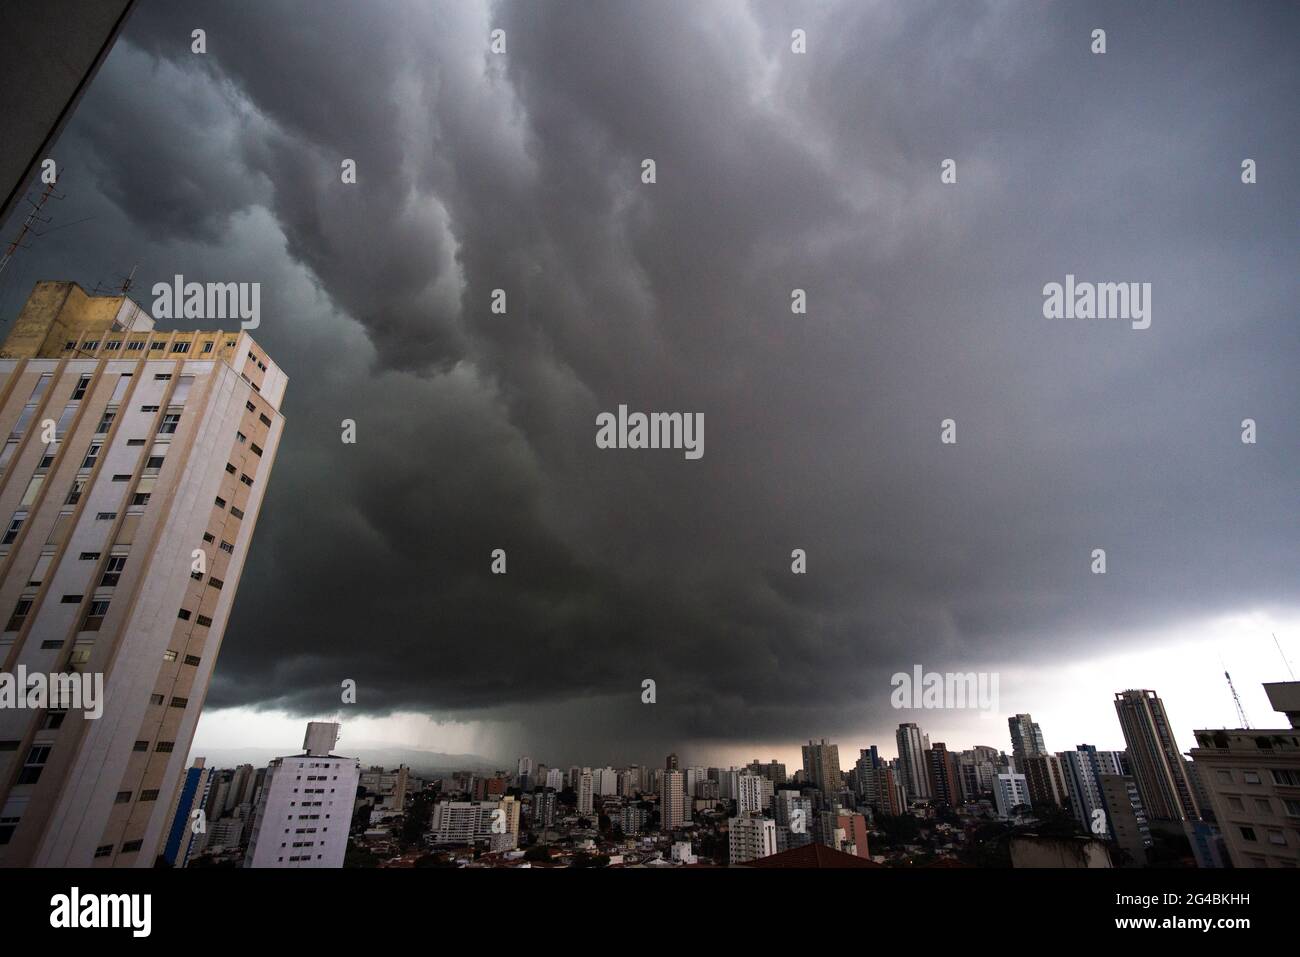 San Paolo in cattive condizioni atmosferiche, molta pioggia Foto Stock